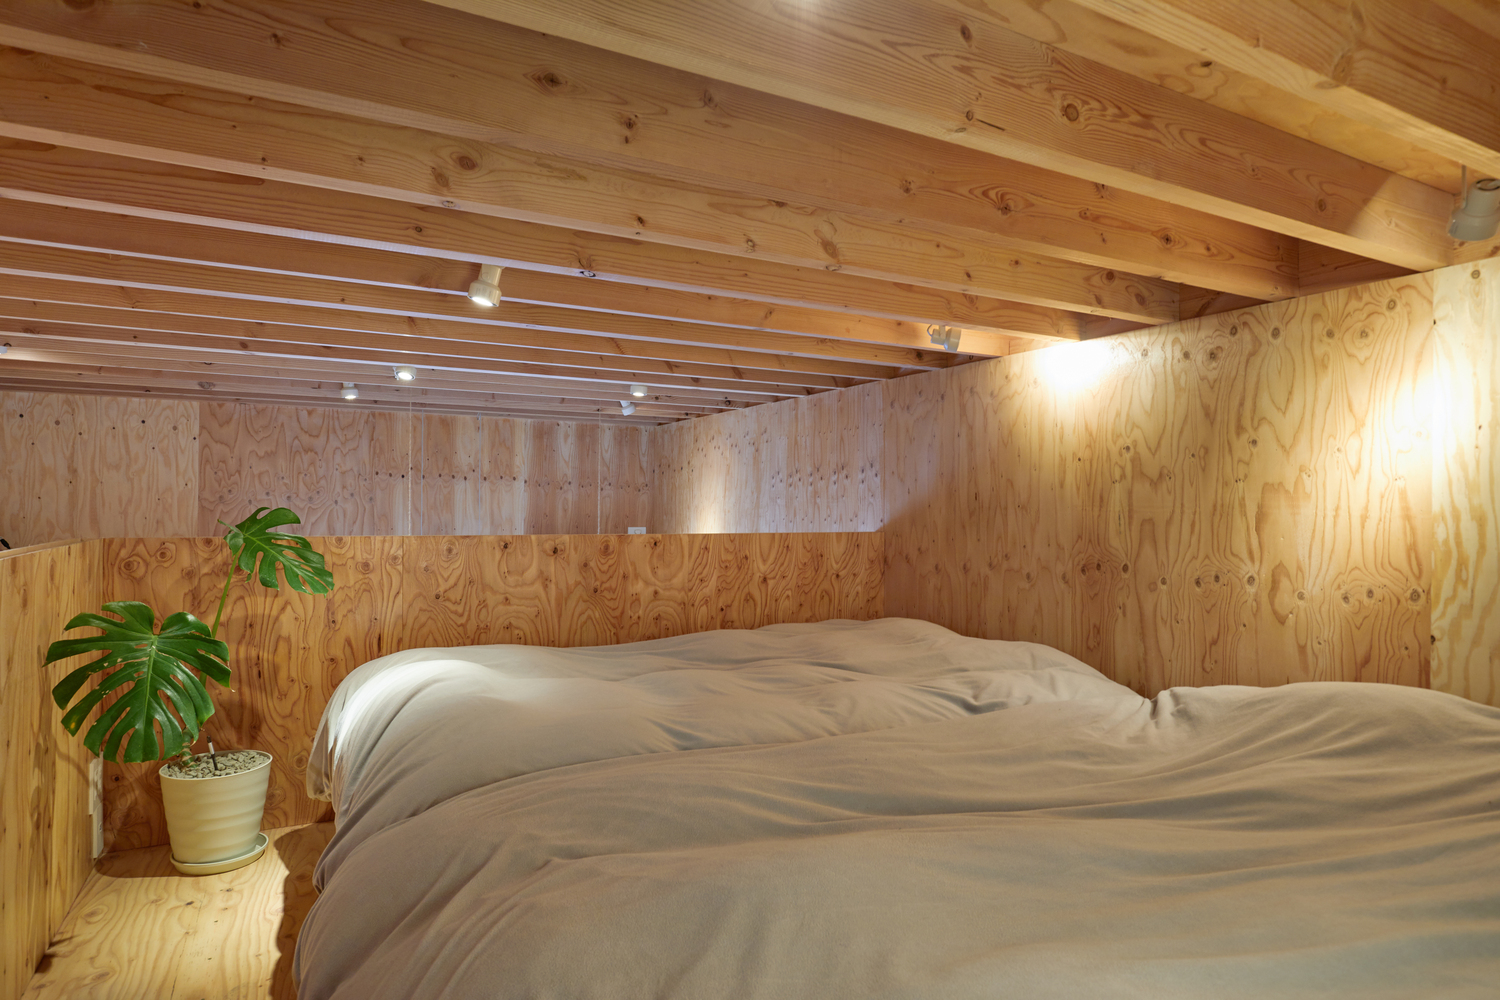 Hình ảnh phòng ngủ trên gác xép với tường, trần bằng gỗ, chậu cảnh lớn ở góc tạo điểm nhấn